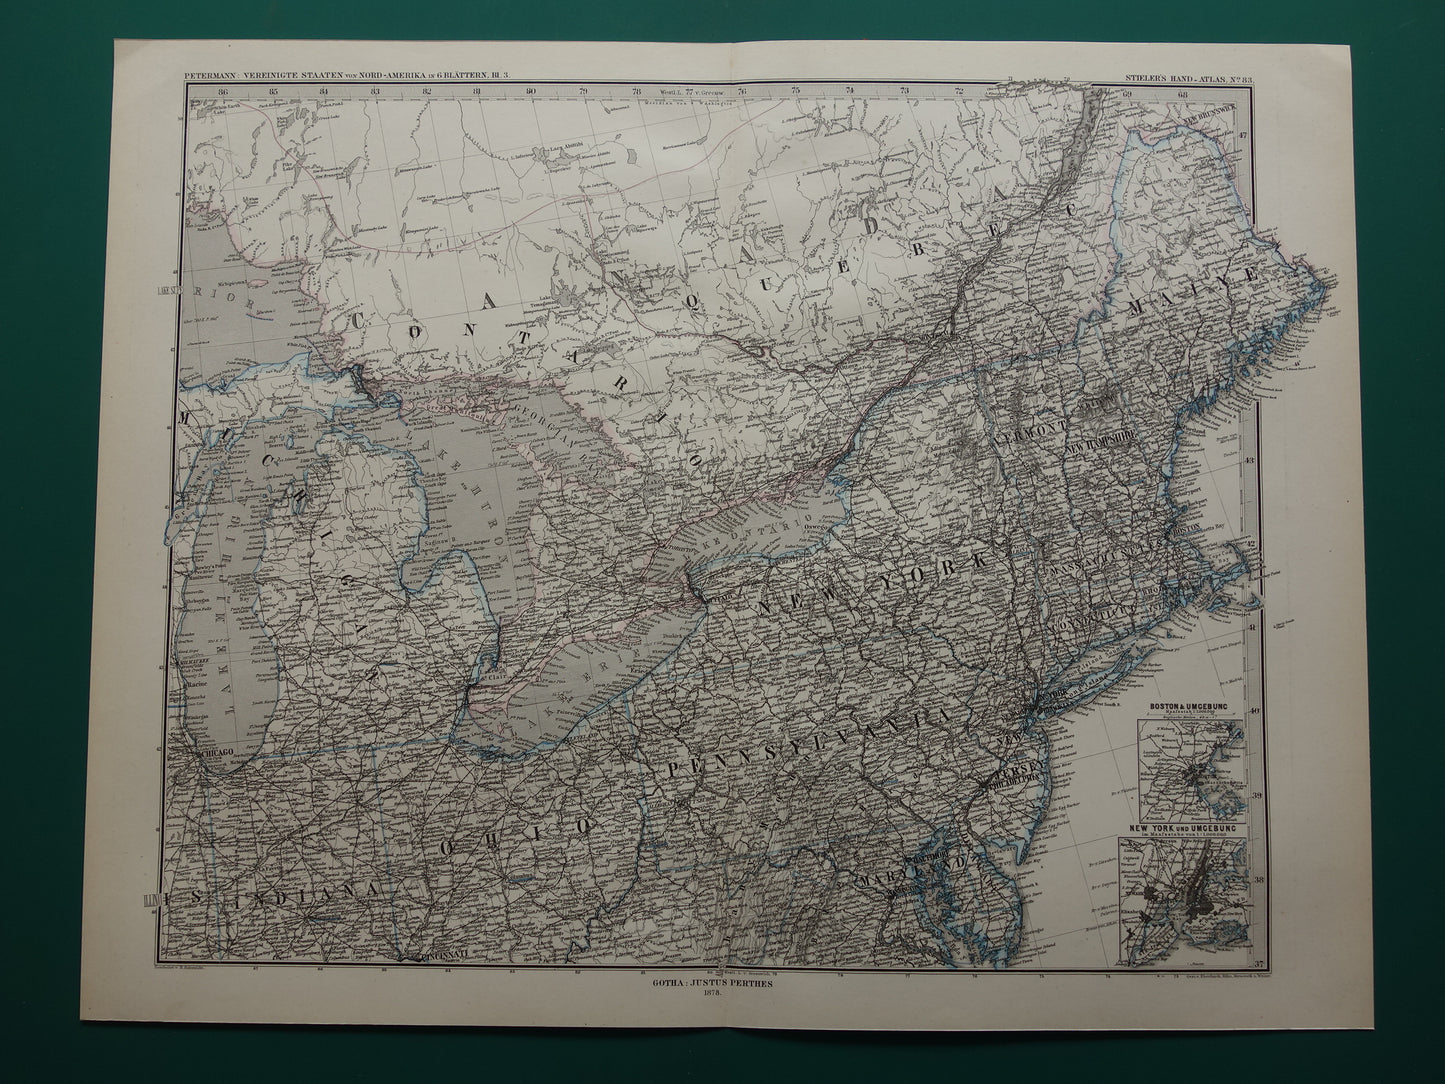 Grote oude landkaart van de Verenigde Staten noordoosten 1878 originele antieke kaart Michigan New York Carolina Great Lakes